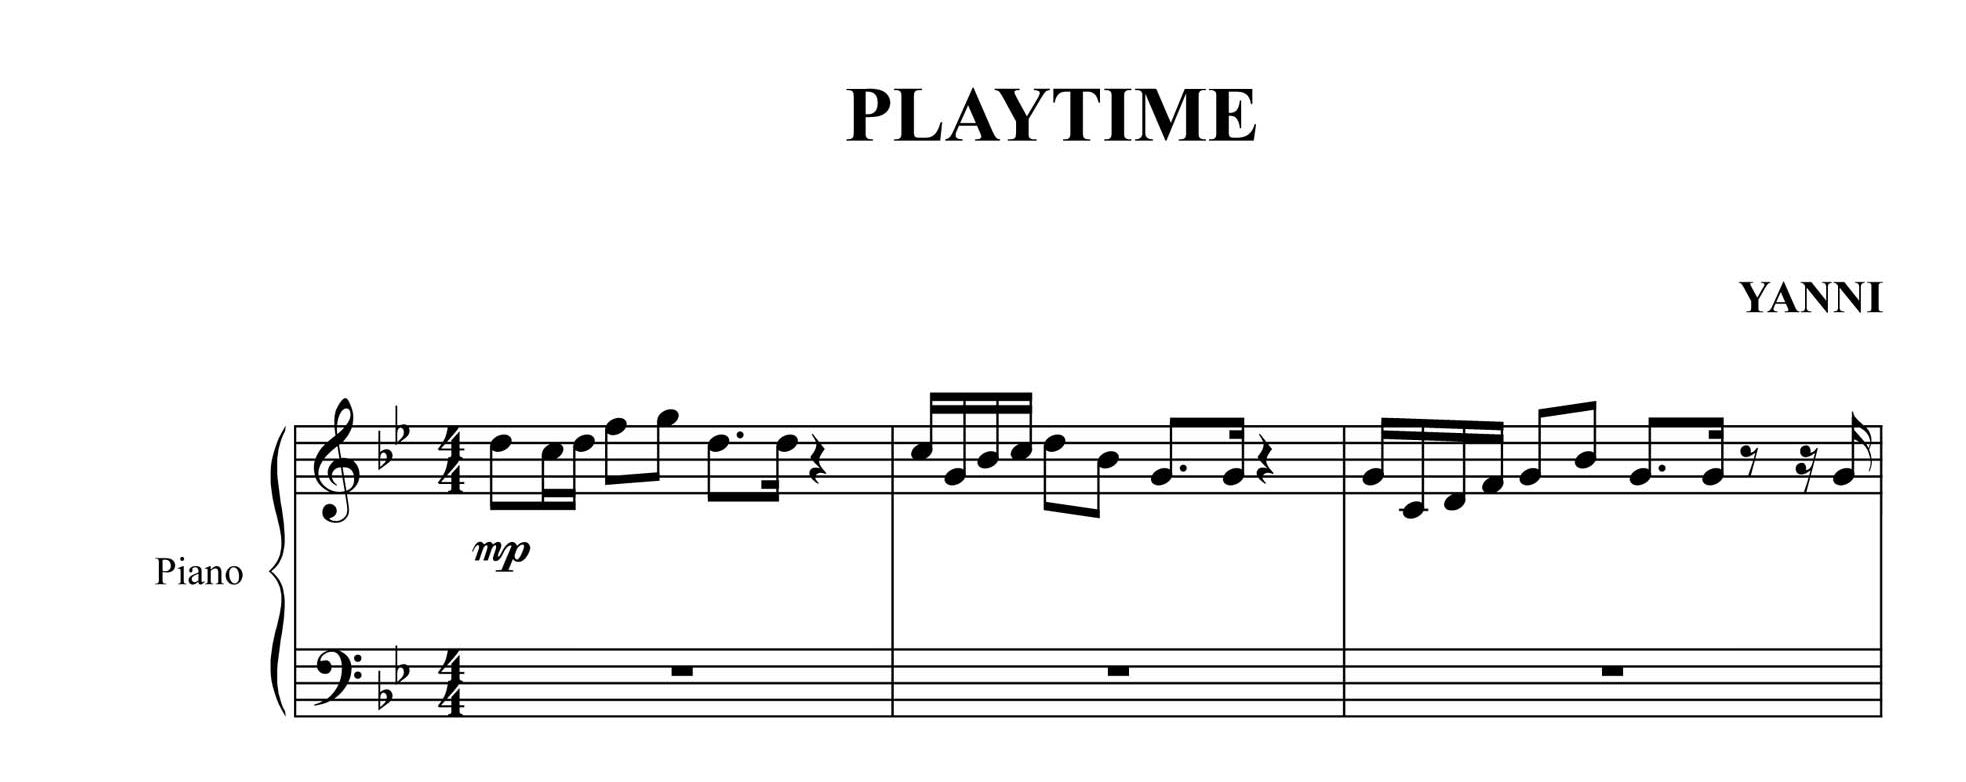 نت قطعه play time از یانی برای پیانو